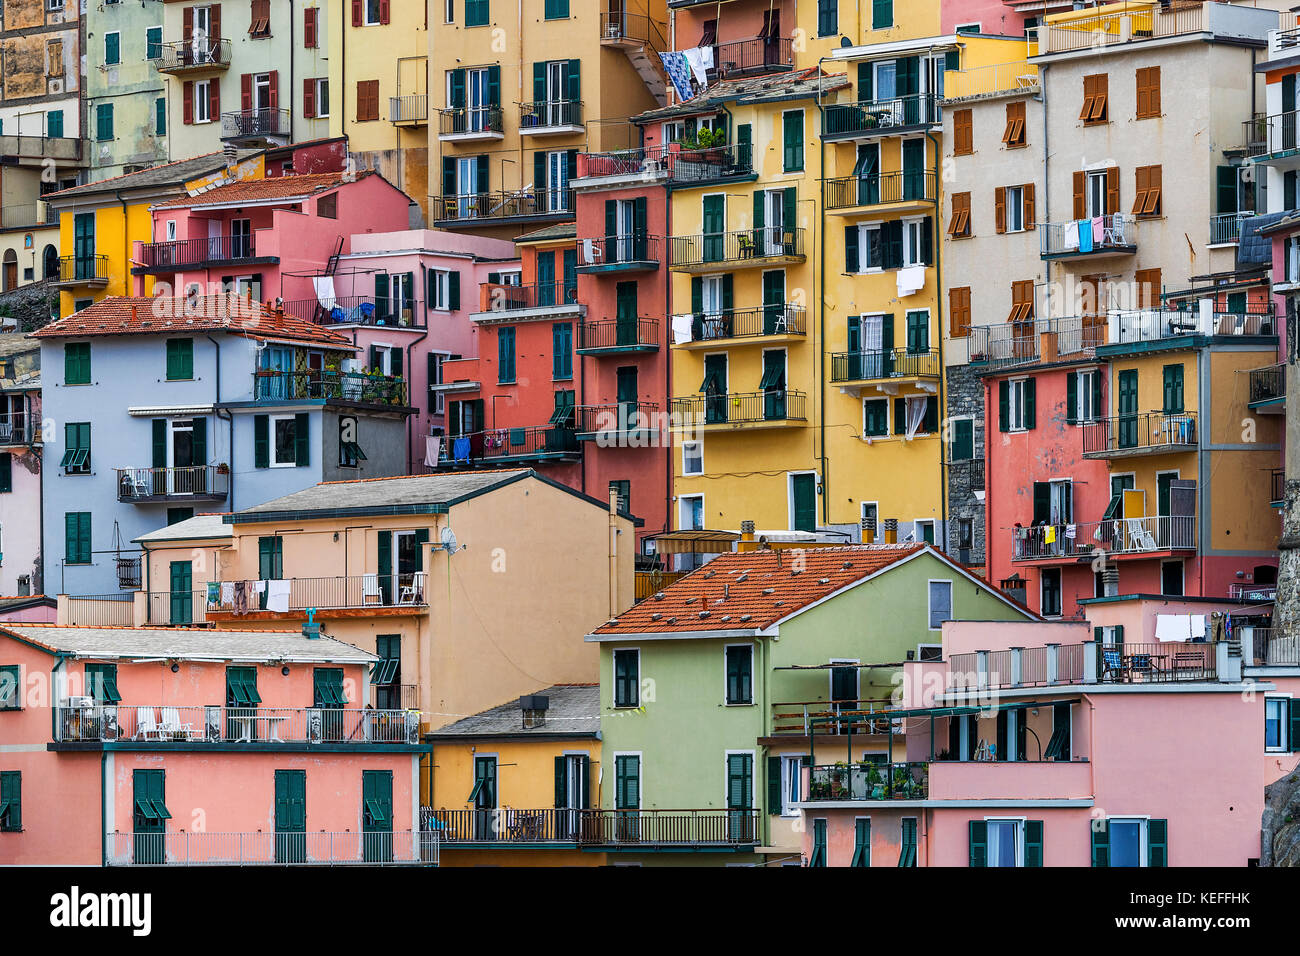 Architecture de charme dans le village de Manarola, Cinque Terre, ligurie, italie. Banque D'Images